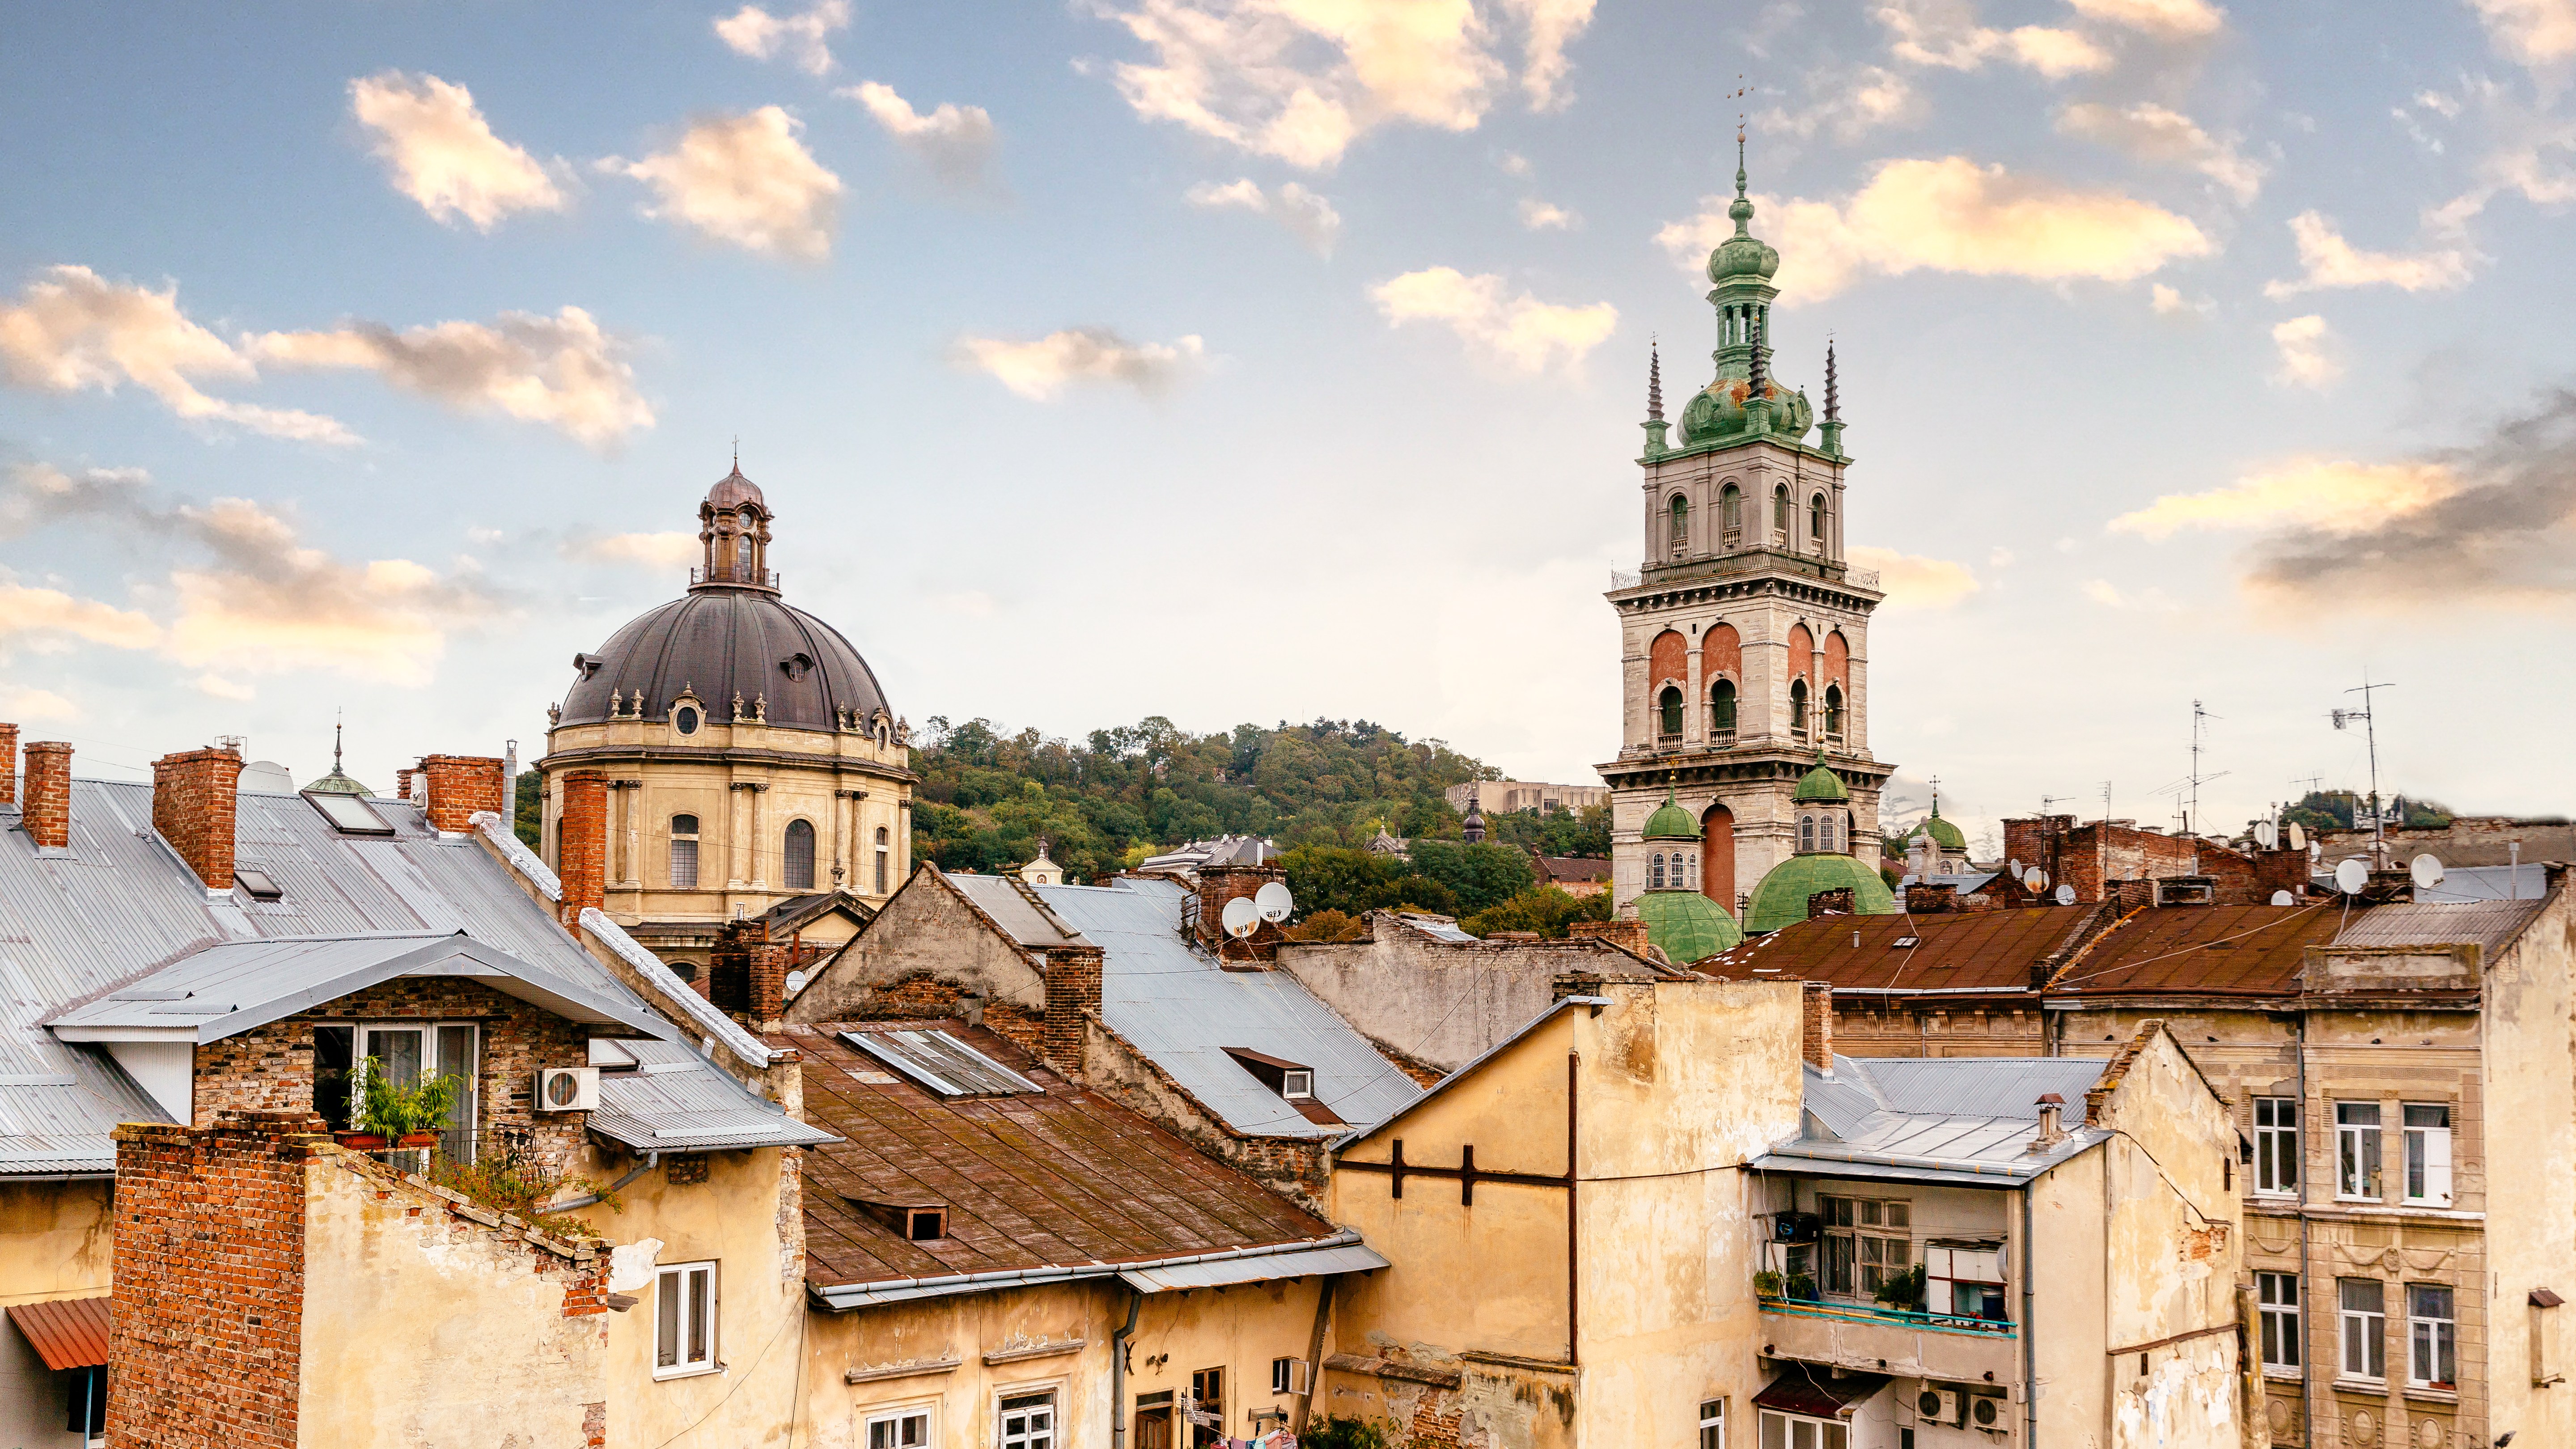 Lviv and kicking: Kurkov makes the city come to life